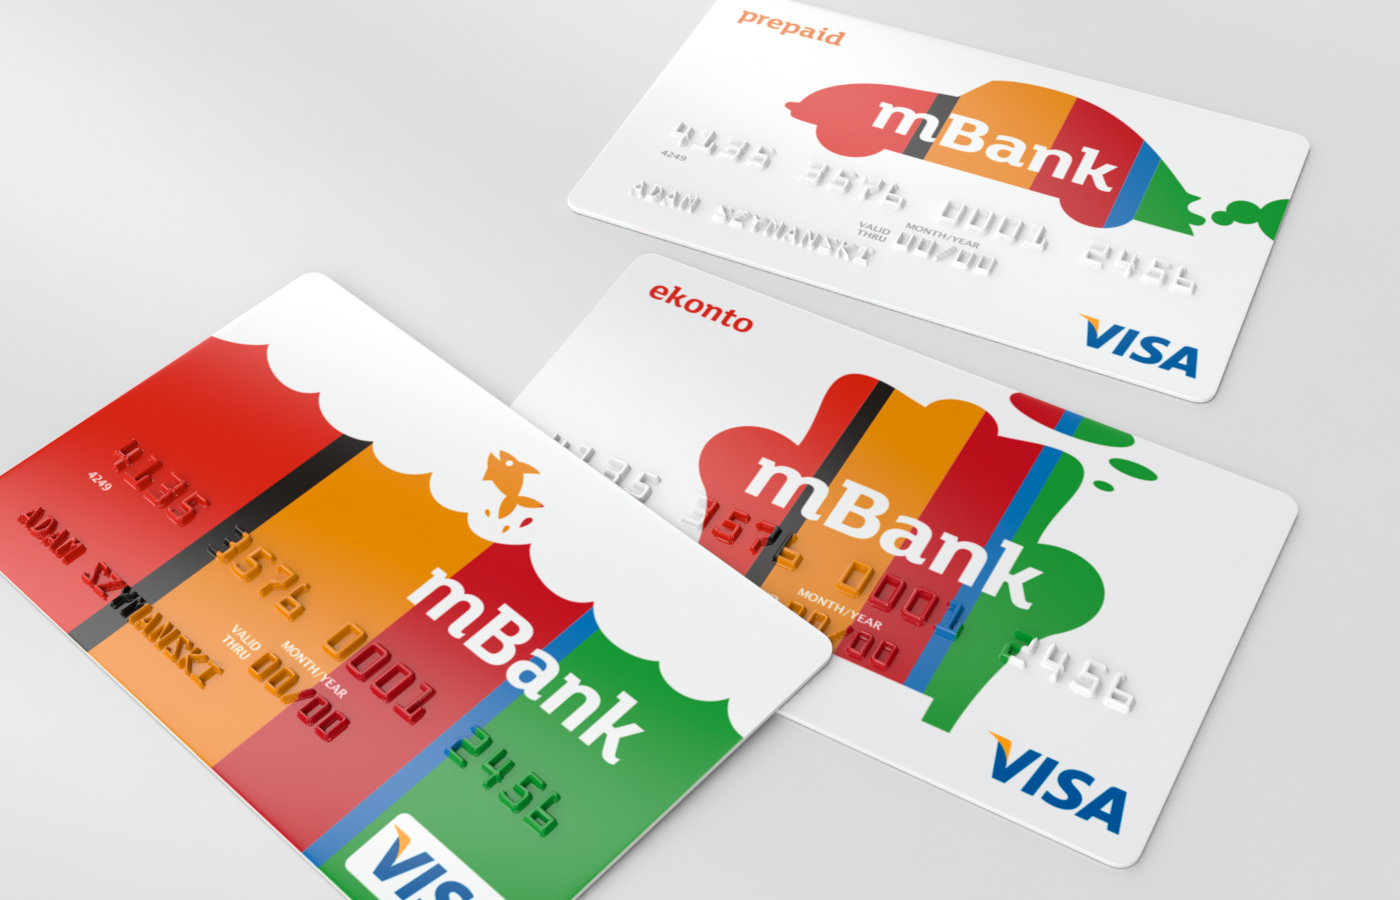 Klienci mBanku, którzy korzystają z BLIKa, będą mogli teraz modyfikować limit kwoty płatności w aplikacji mobilnej. Nie będą równocześnie ograniczenia limitem liczbowym transakcji. Równocześnie pojawiają się karty wirtualne od mBanku!